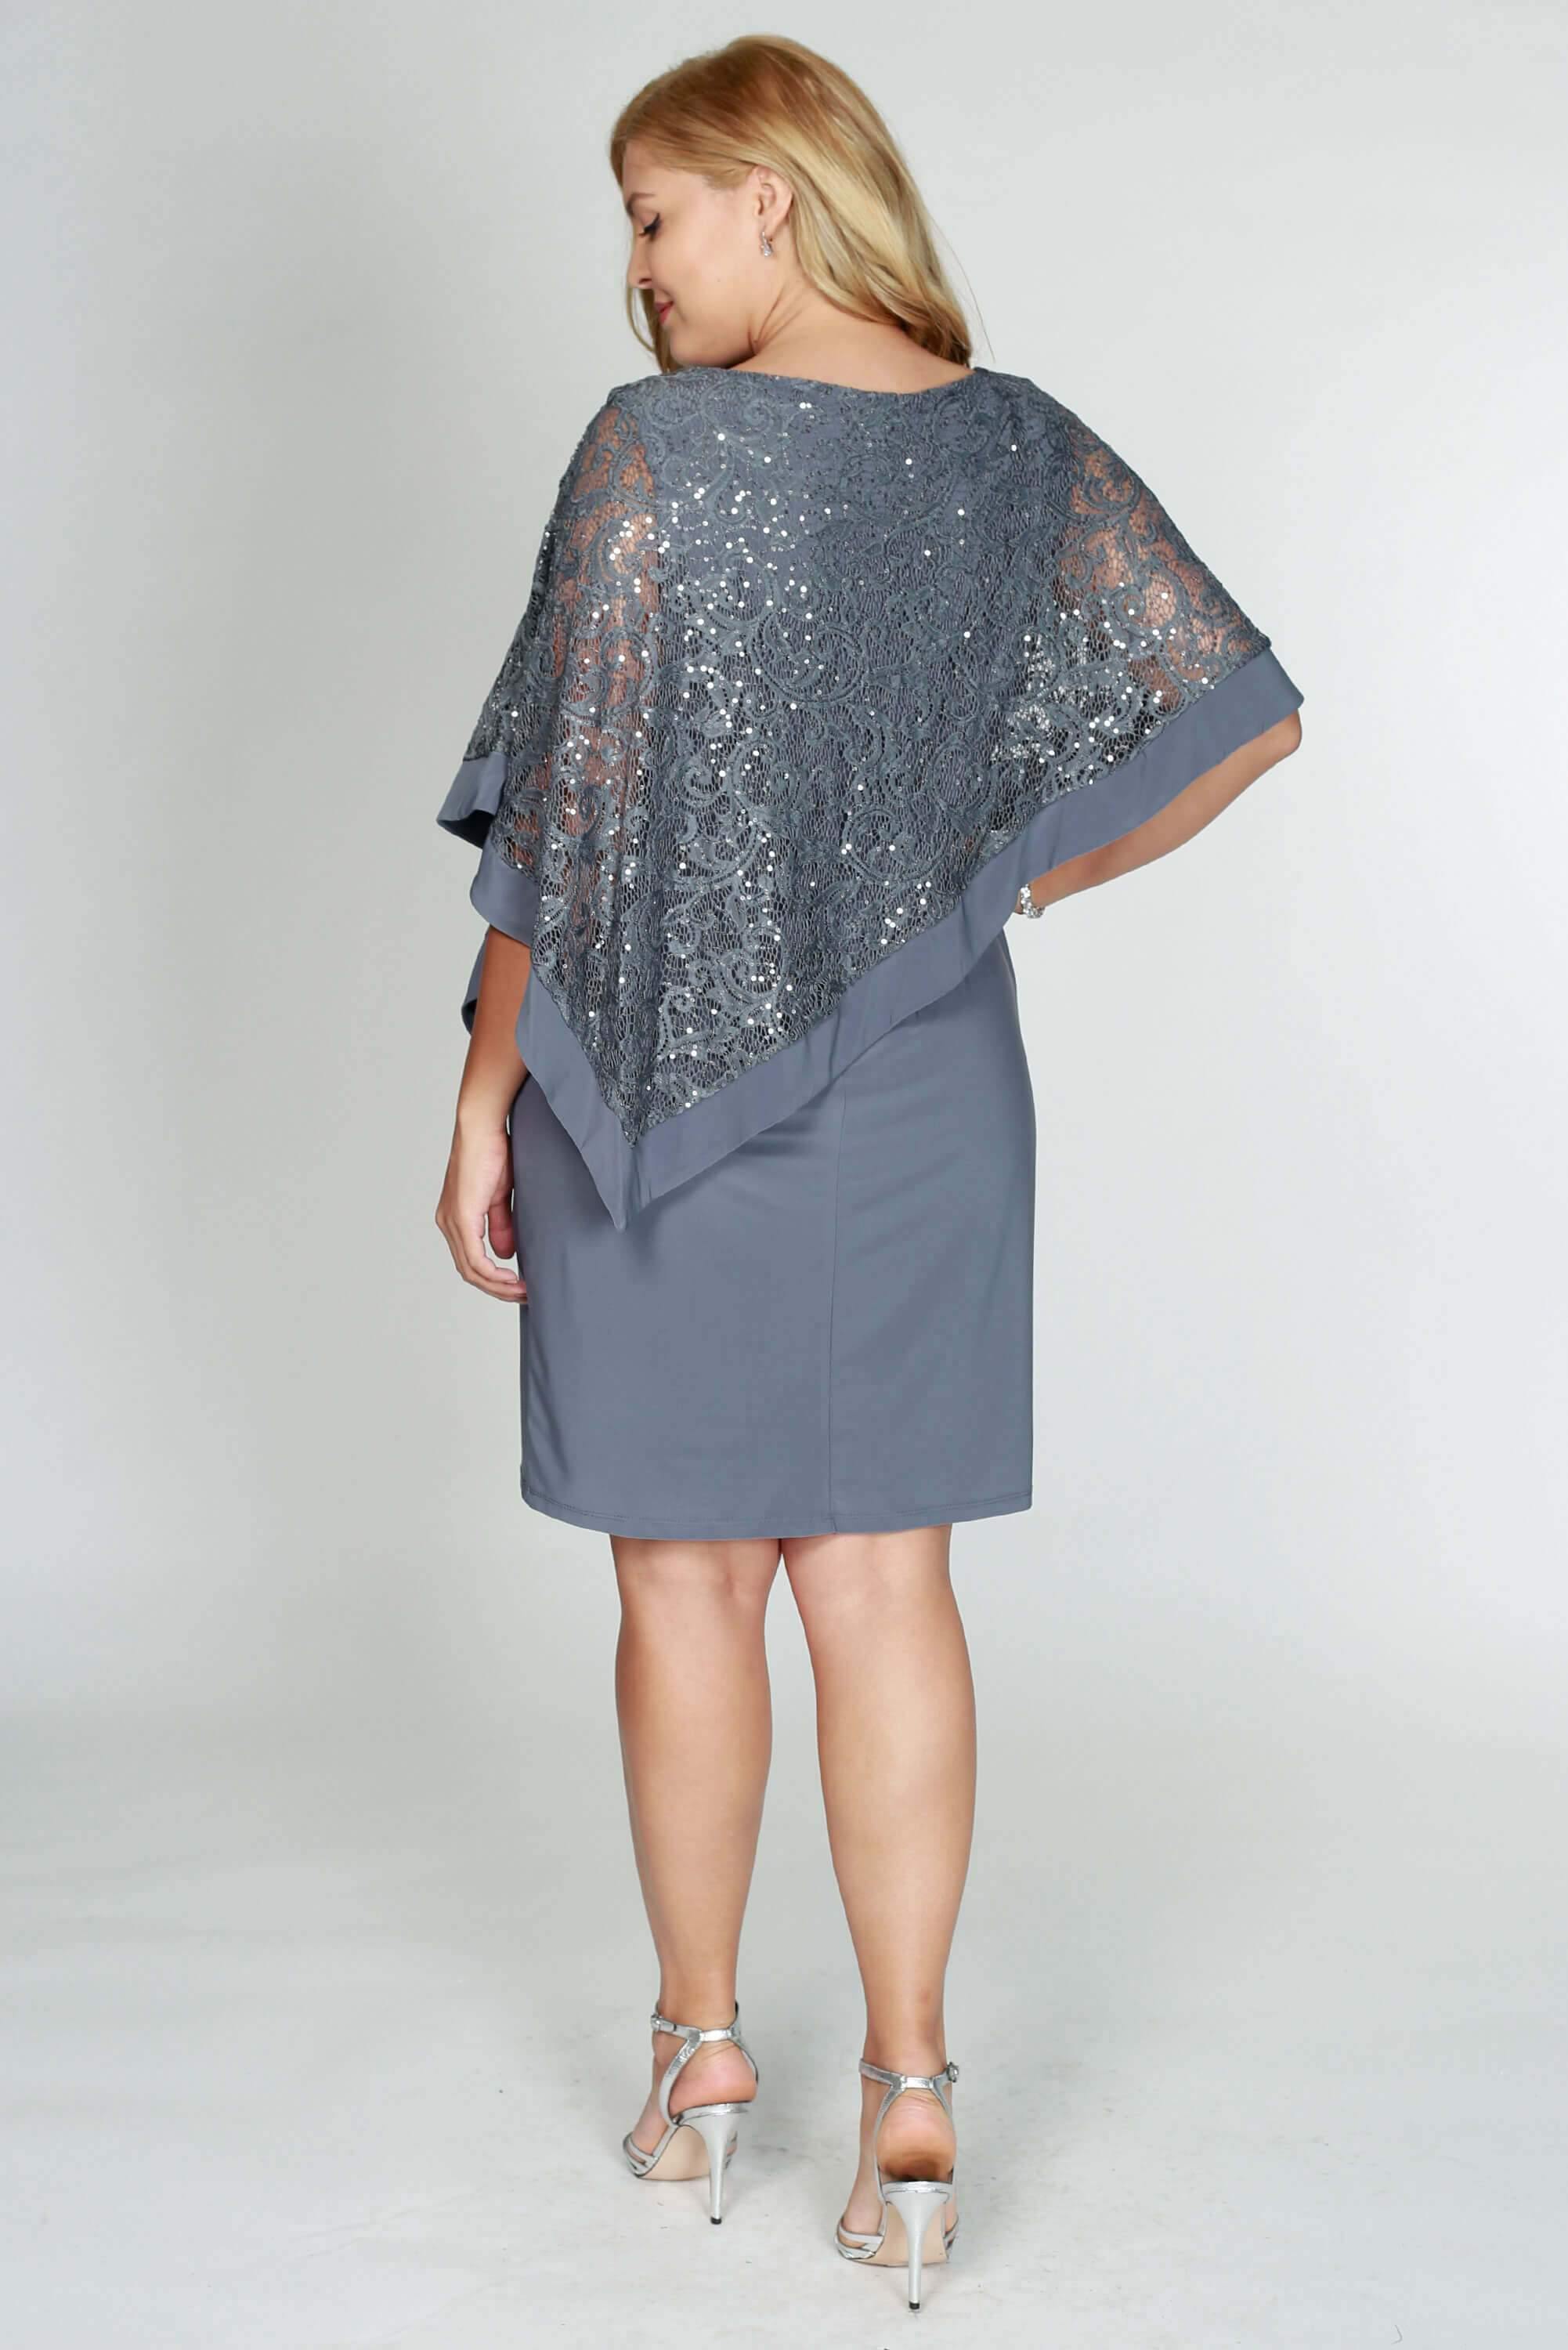 R&M Richards Short Metallic Lace Petite Dress 2292P - The Dress Outlet